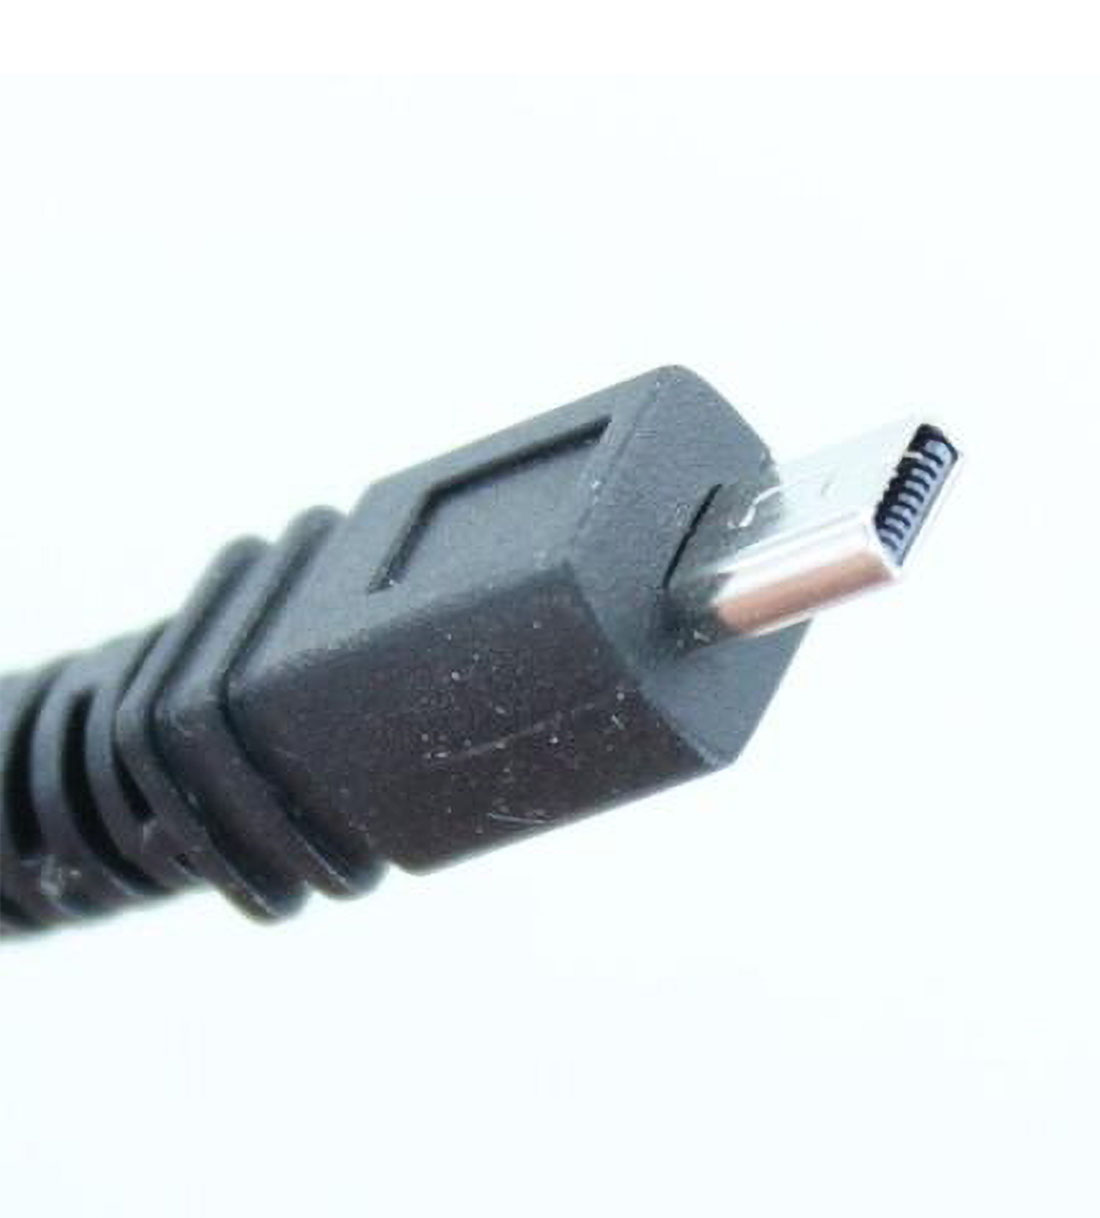 MOBILOTEC USB-Datenkabel kompatibel mit JX370 FinePix schwarz Fuji, Fuji Zubehör